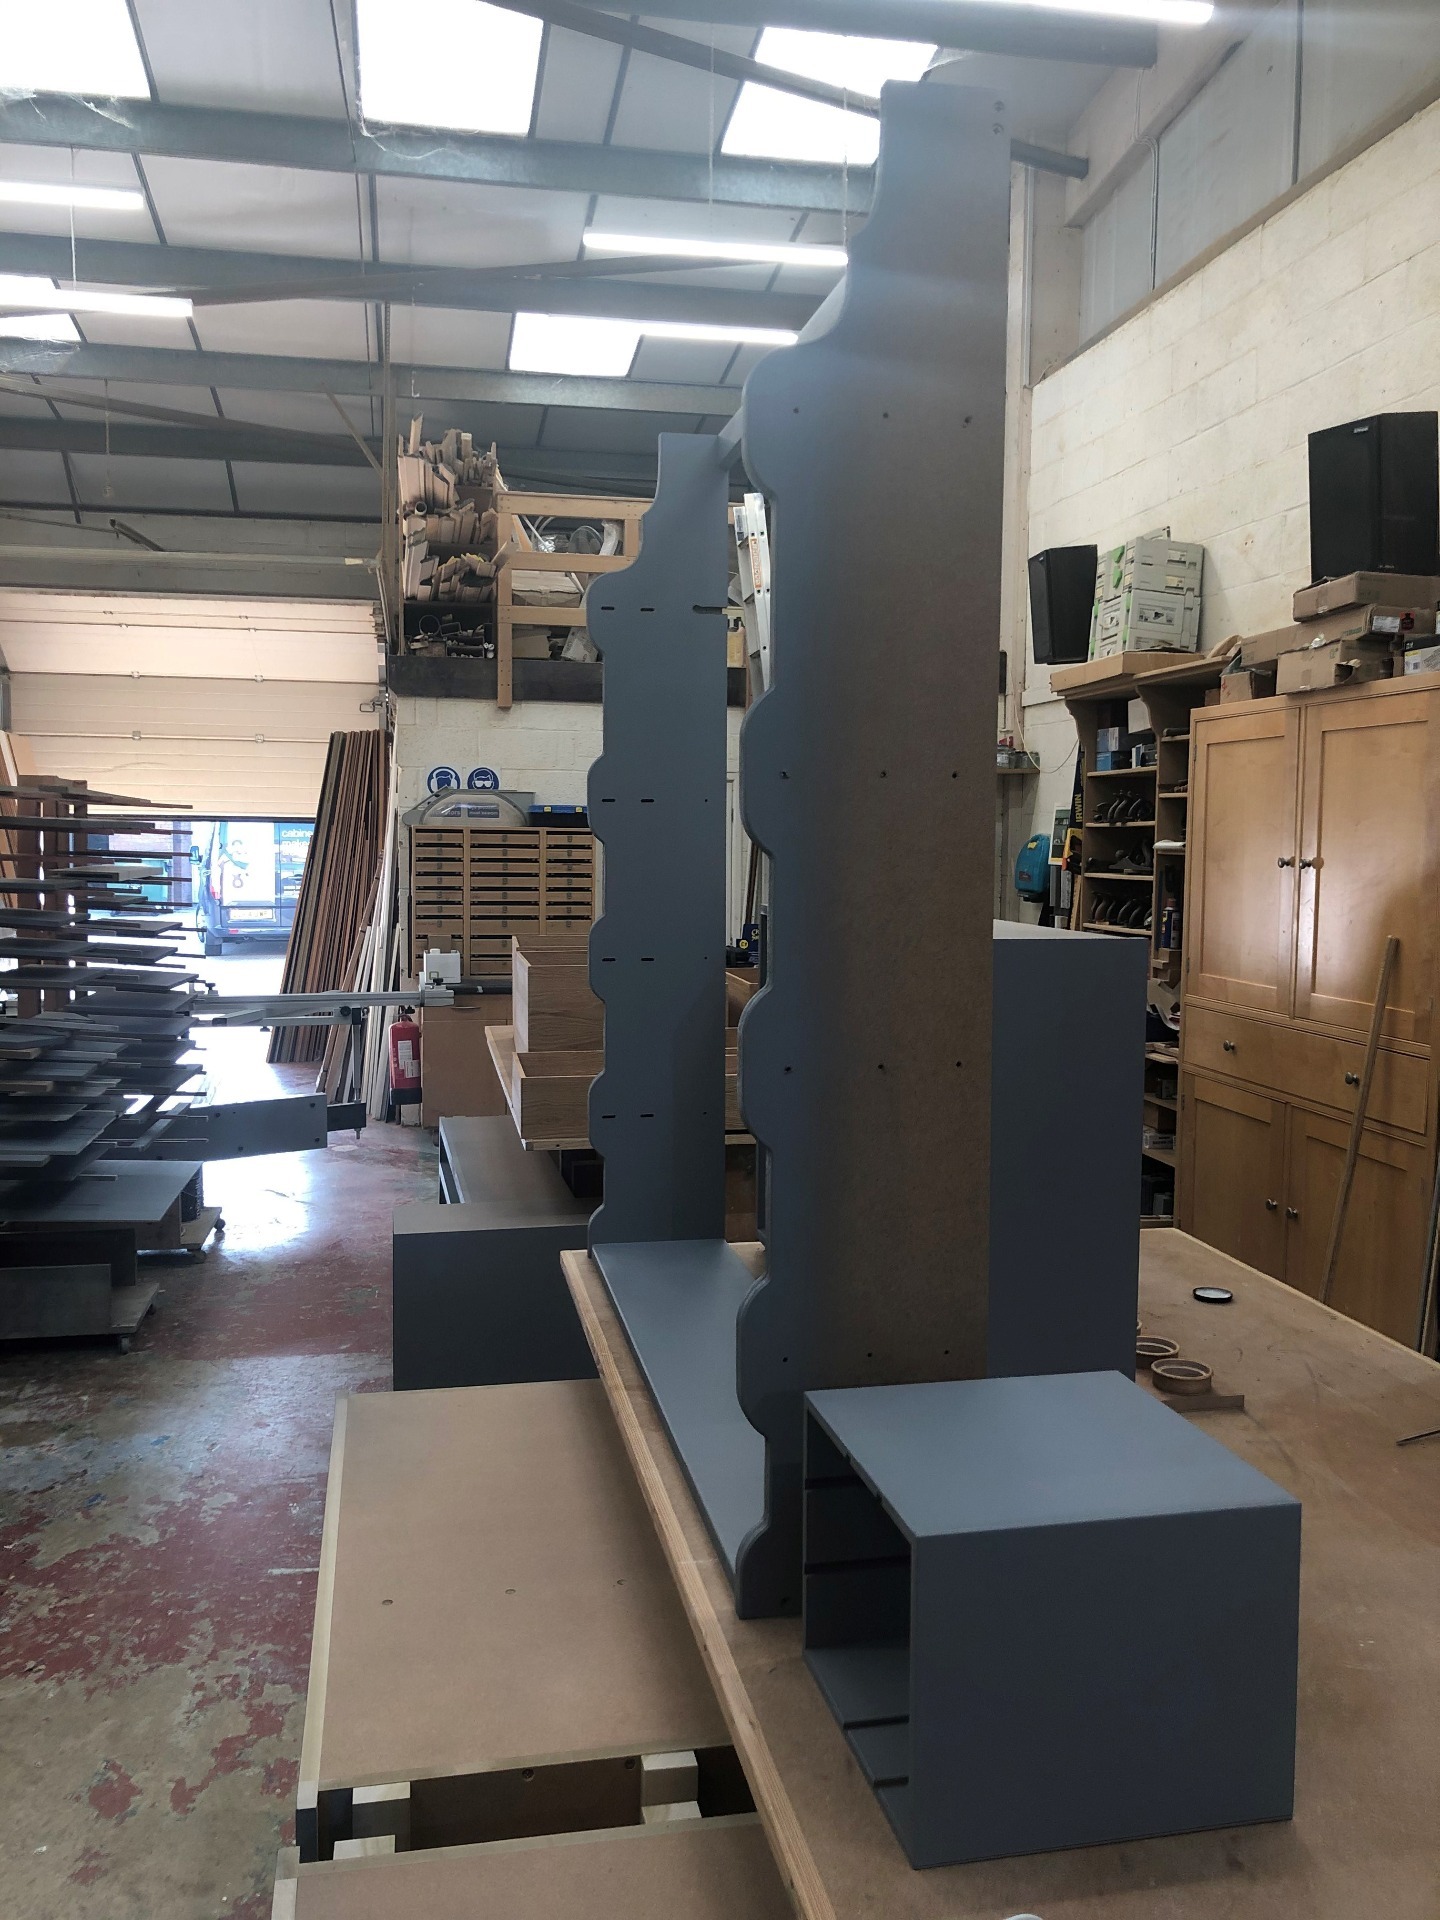 Alcove furniture under construction in Kidlington workshop